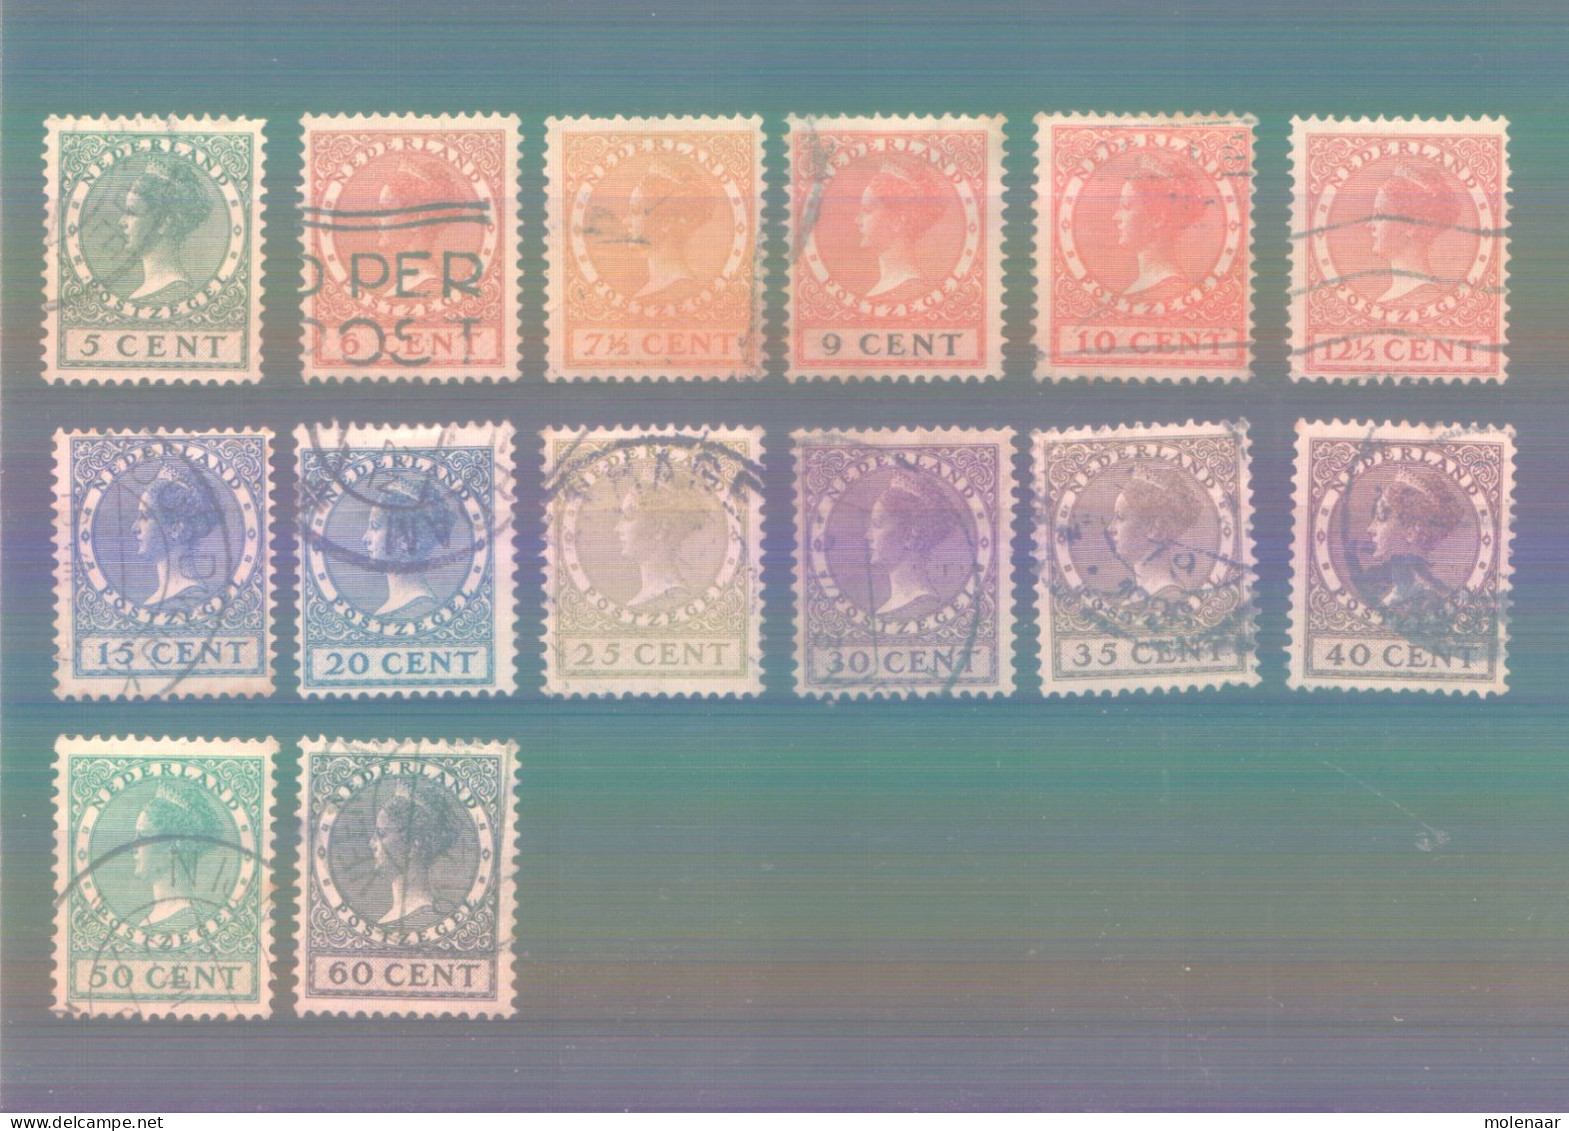 Postzegels > Europa > Nederland > Periode 1891-1948 (Wilhelmina) > 1891-1909 > 149-162 Gebruikt (11758) - Used Stamps